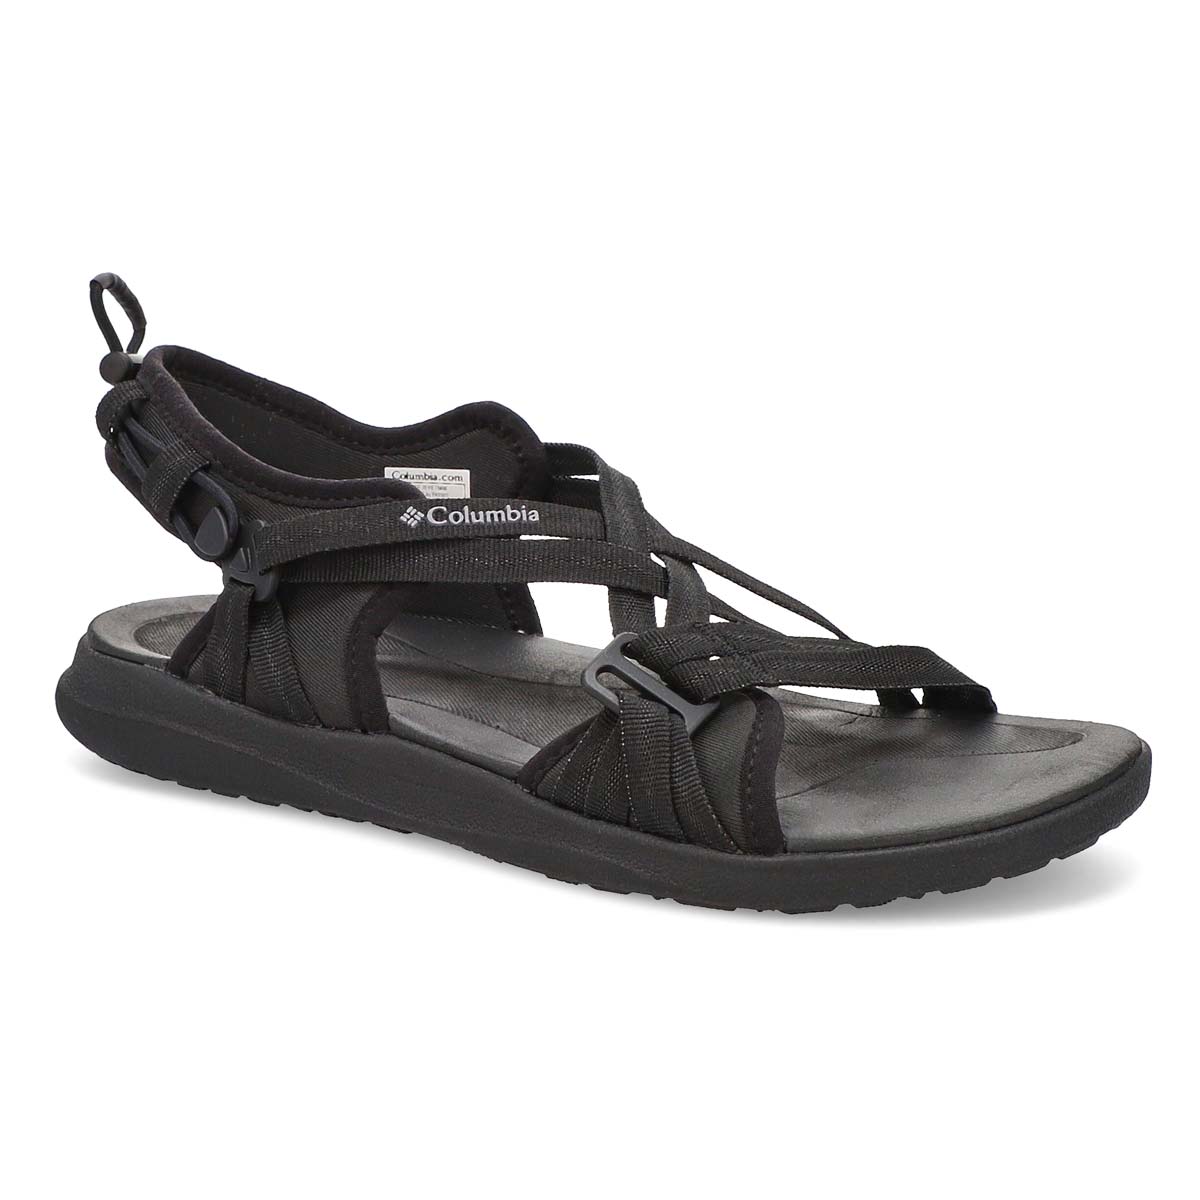 Sandales sport COLUMBIA SANDAL, noir/gris, femmes